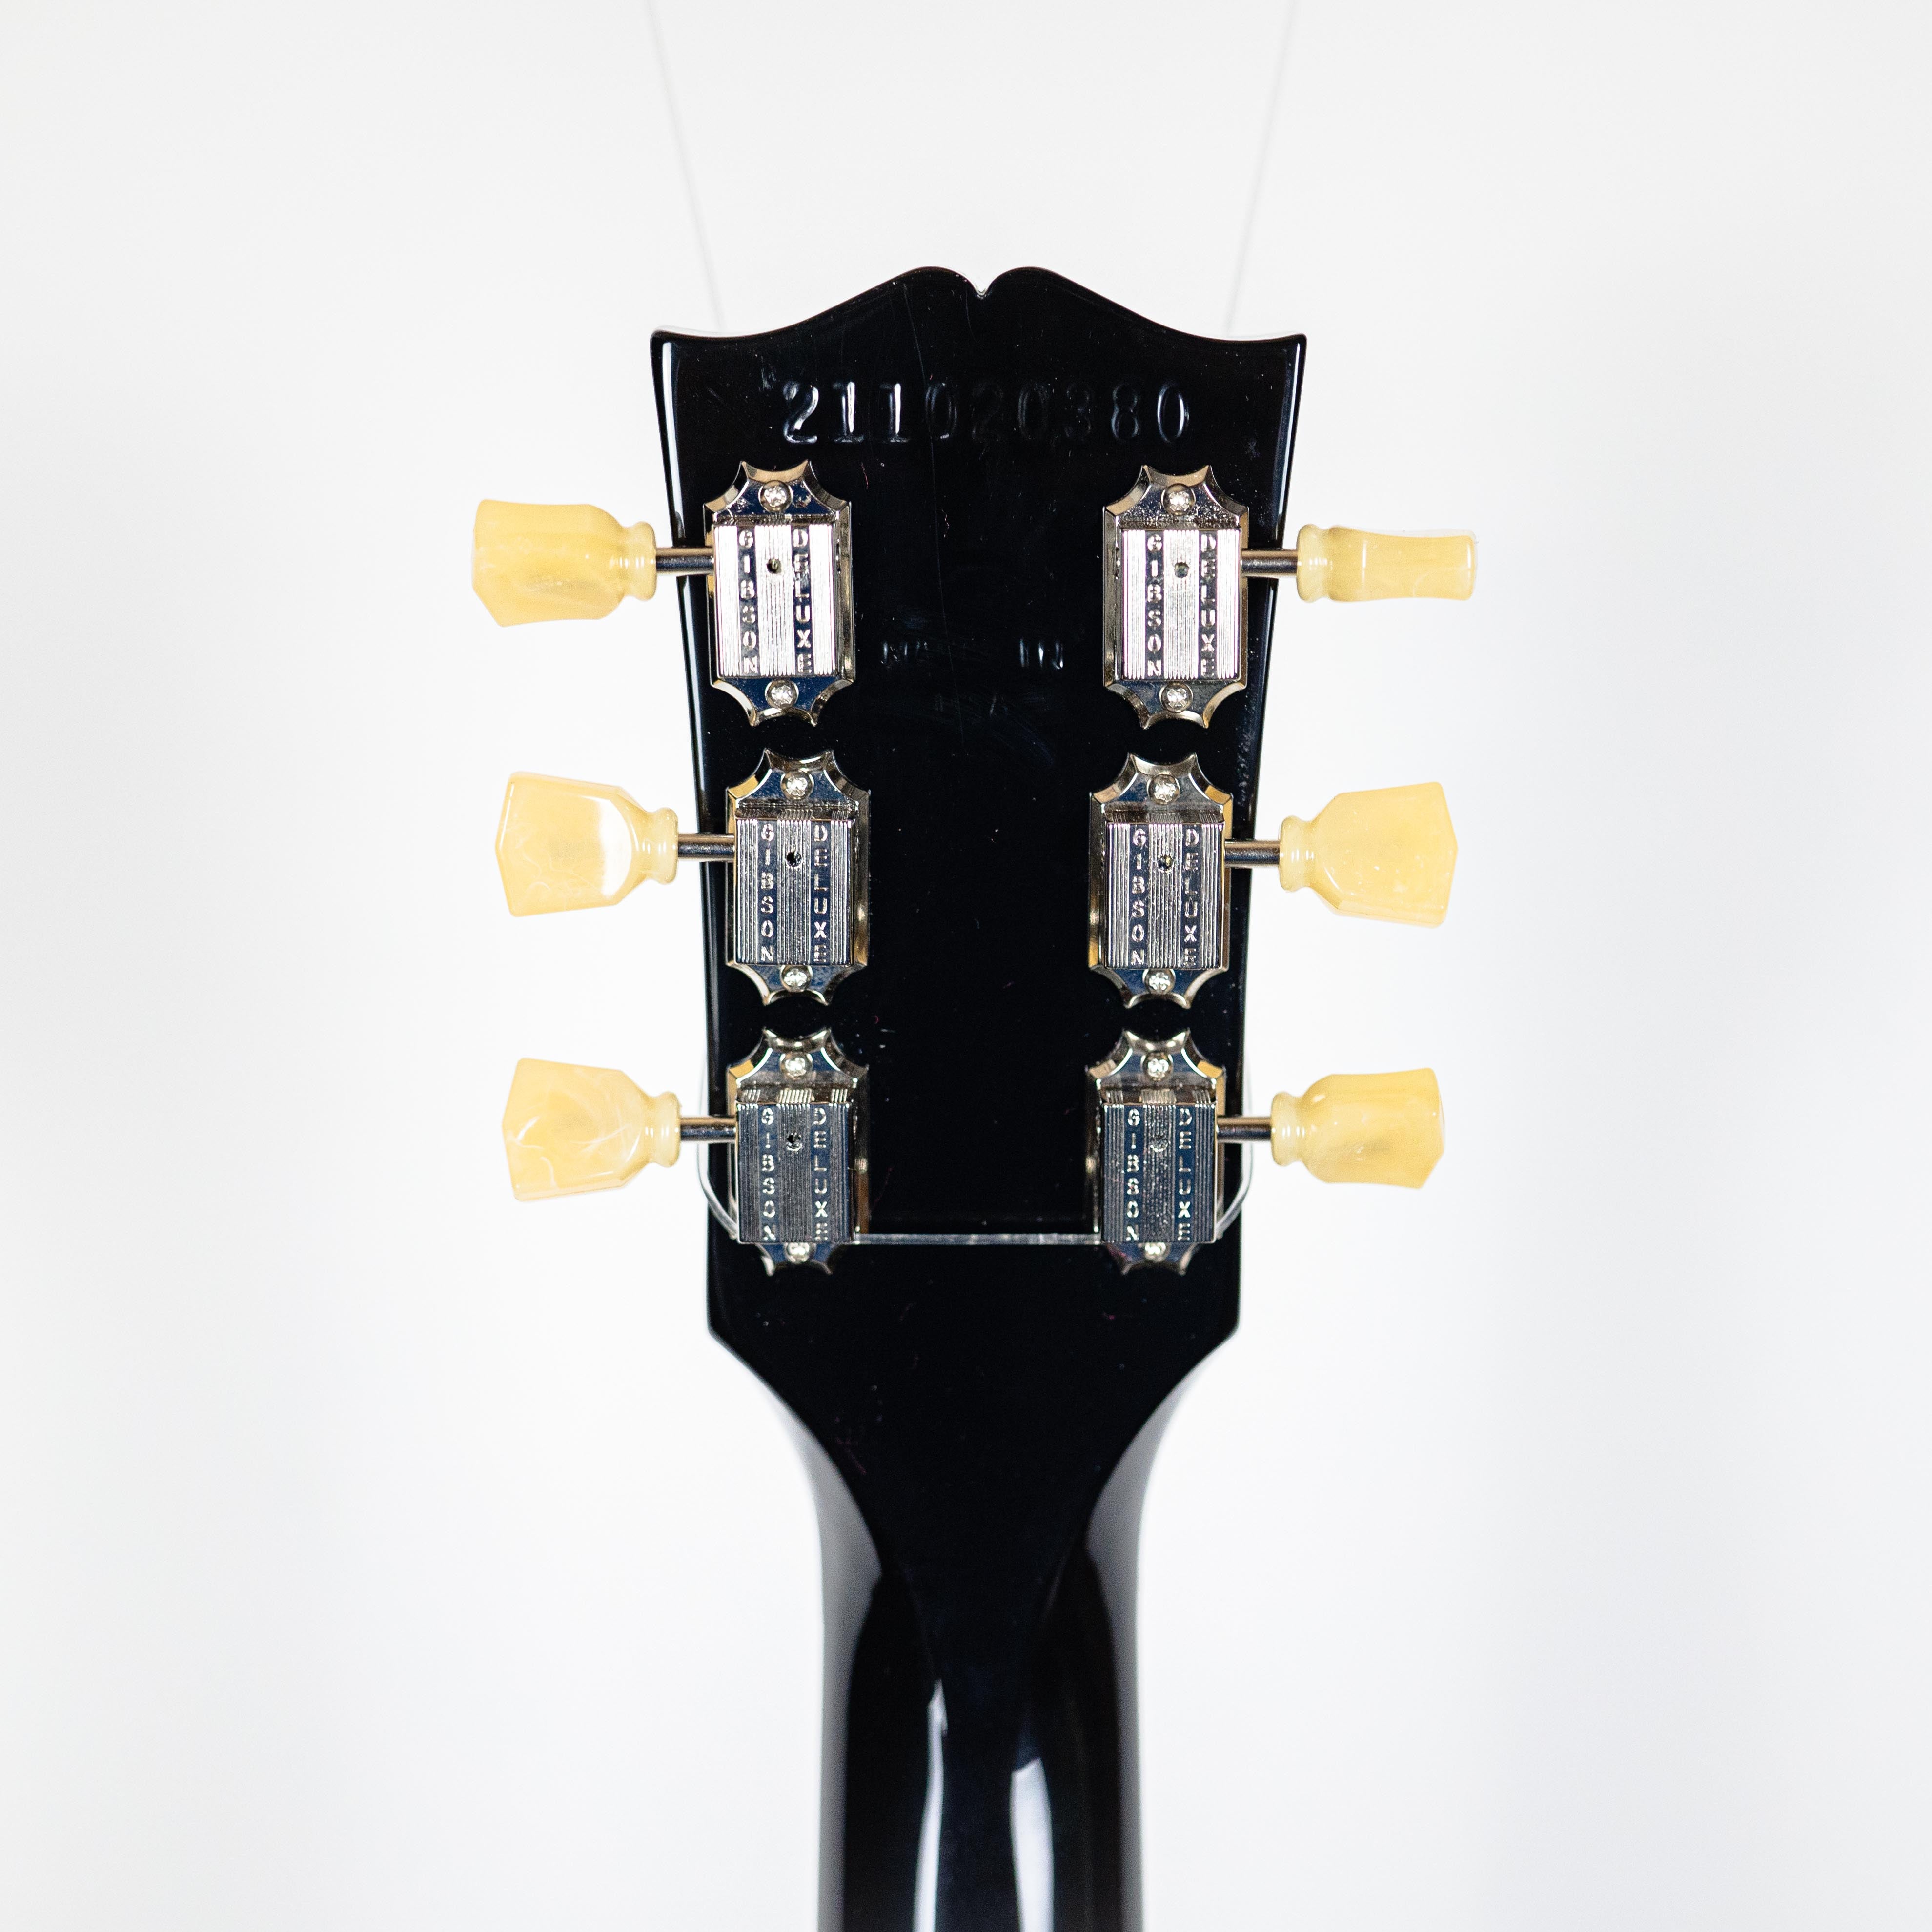 Gibson ES-335 Vintage Ebony